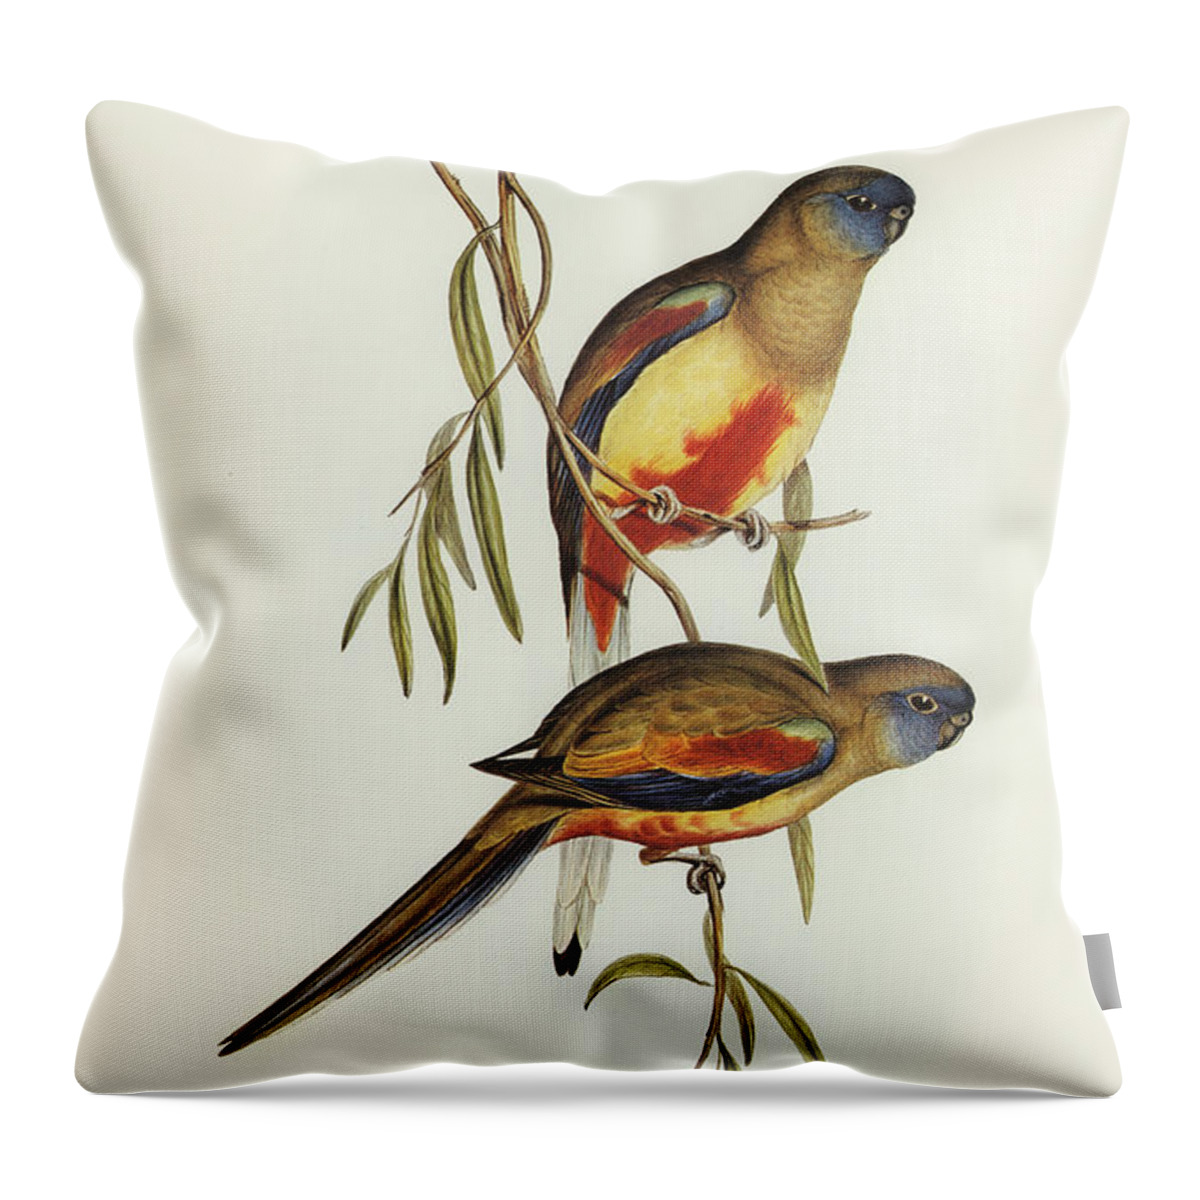 Crimson-bellied Parakeet Throw Pillow featuring the drawing Crimson-bellied Parakeet, Psephotus haematogaster by John Gould